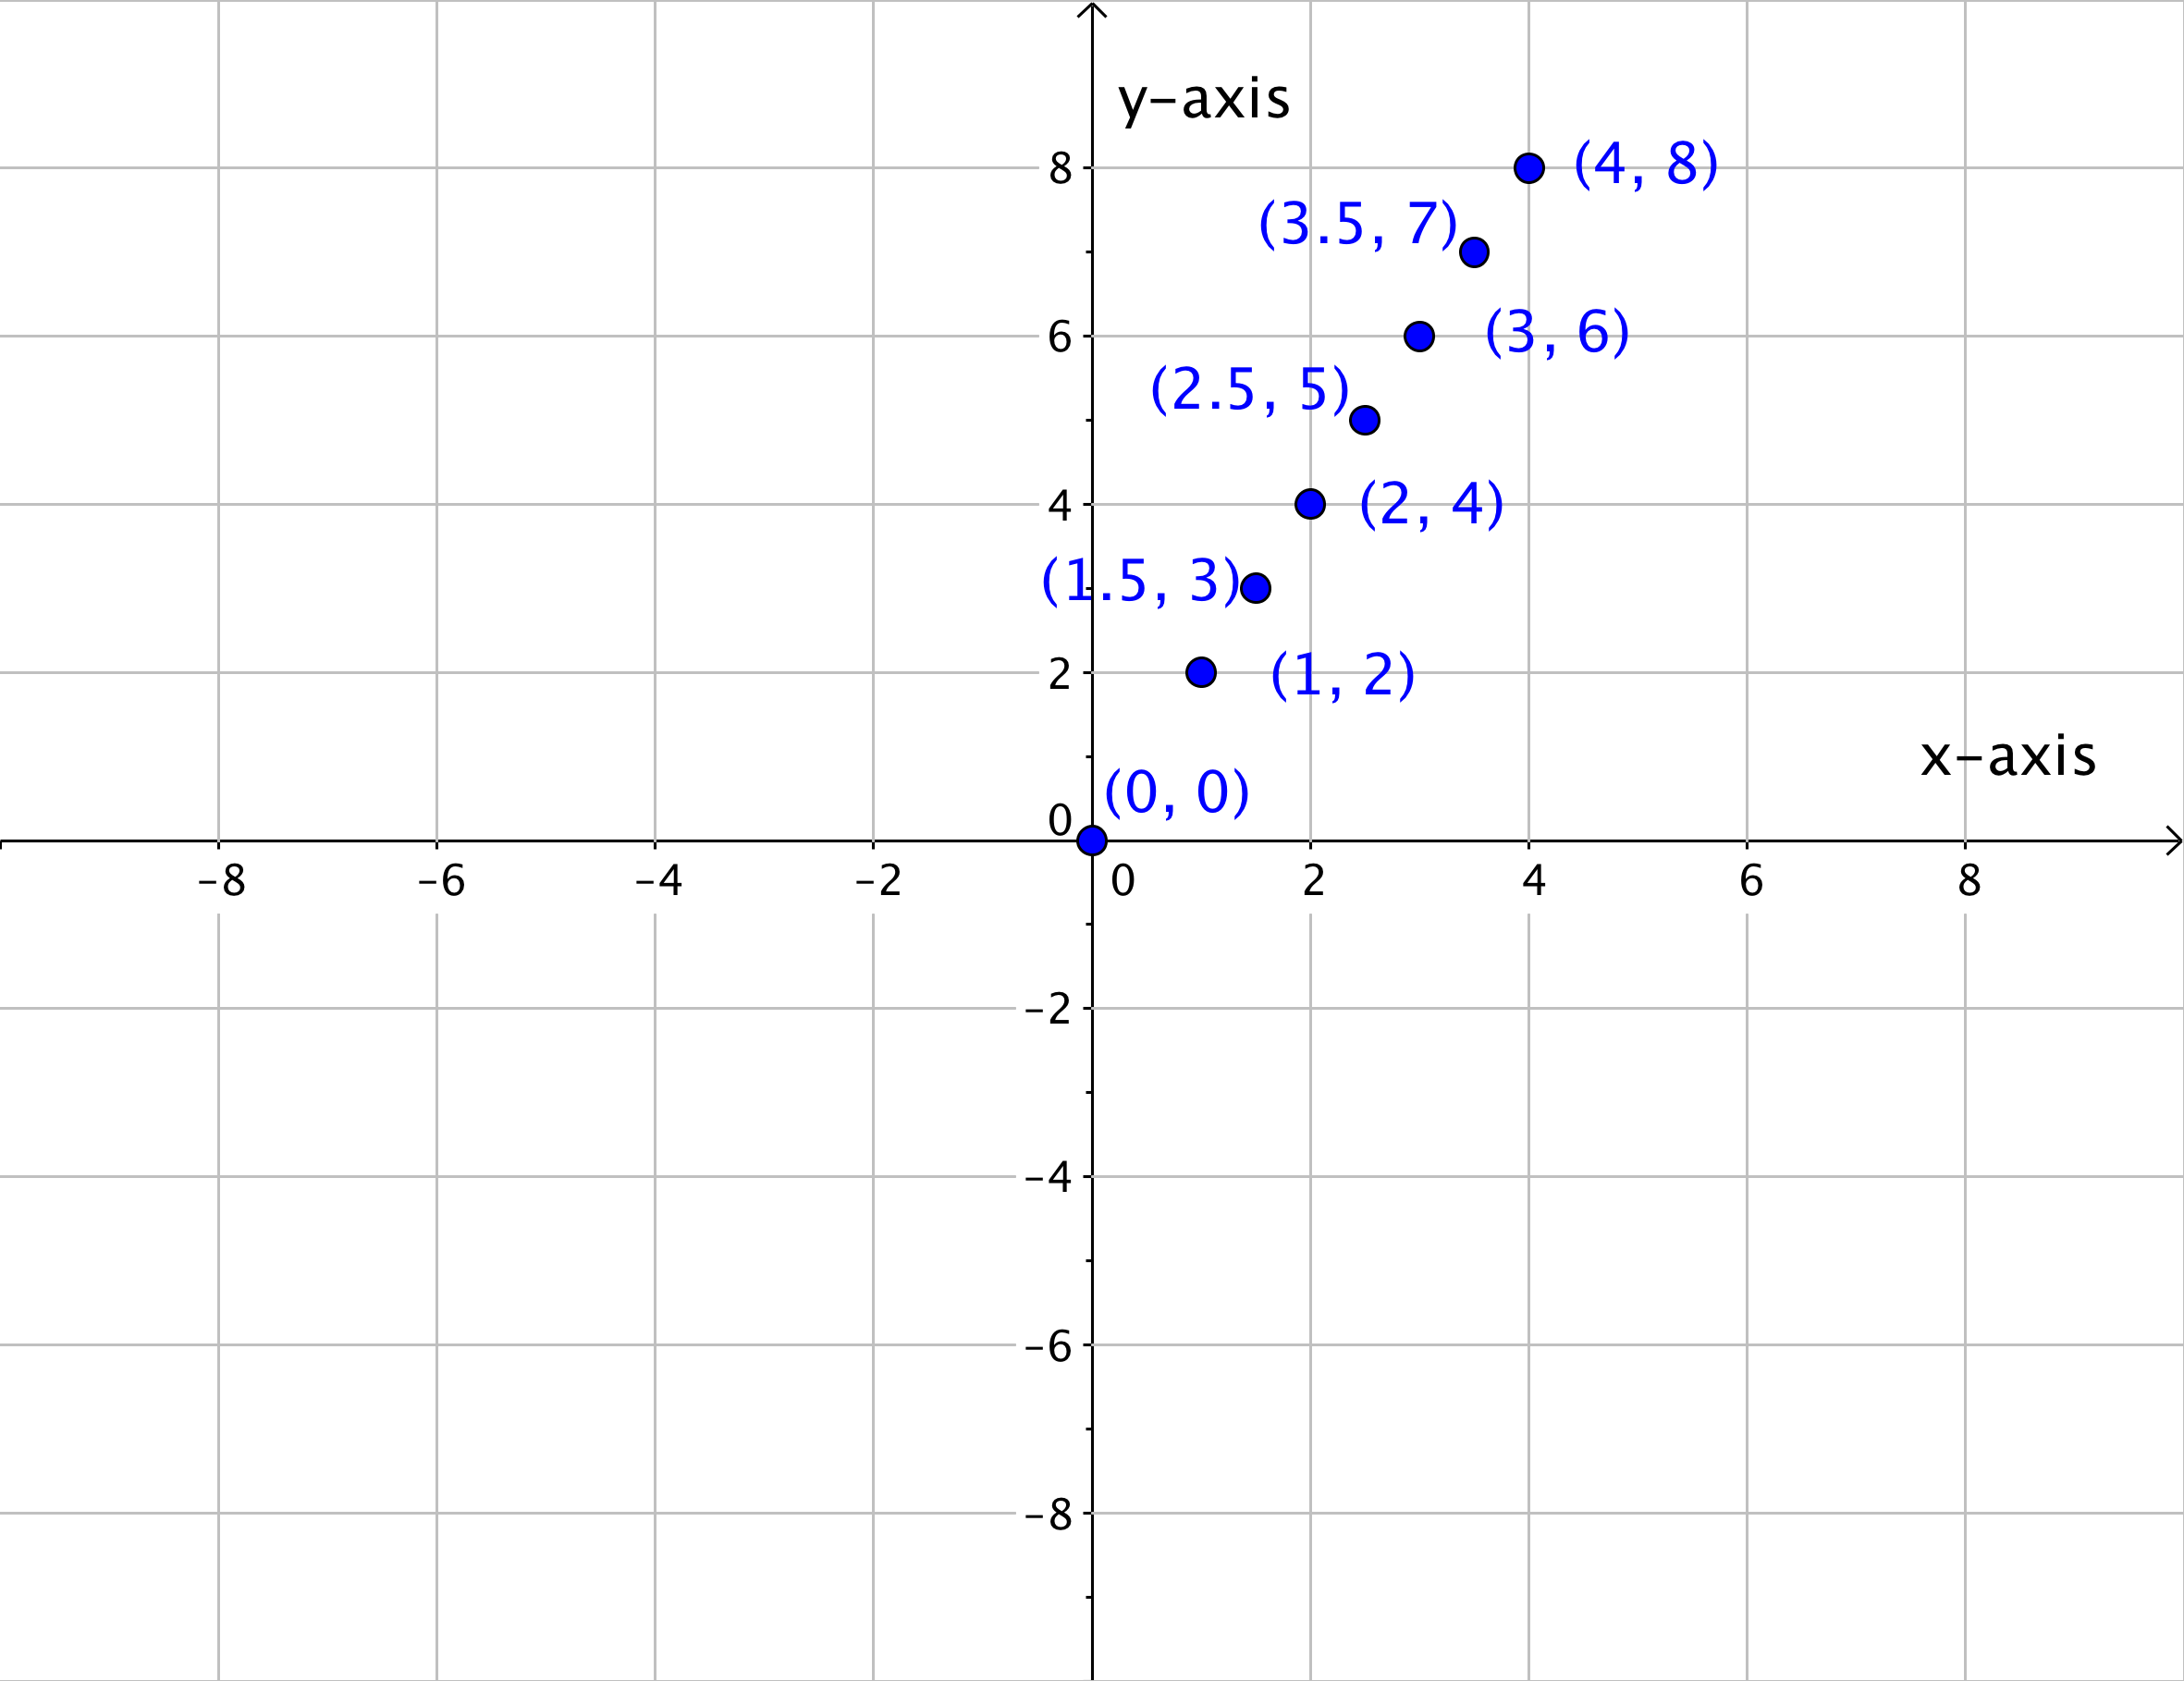 Graph with the point (0,0); the point (1,2); the point (1.5, 3); the point (2,4); the point (2.5, 5); the point (3,6); the point (3.5, 7); and the point (4,8).